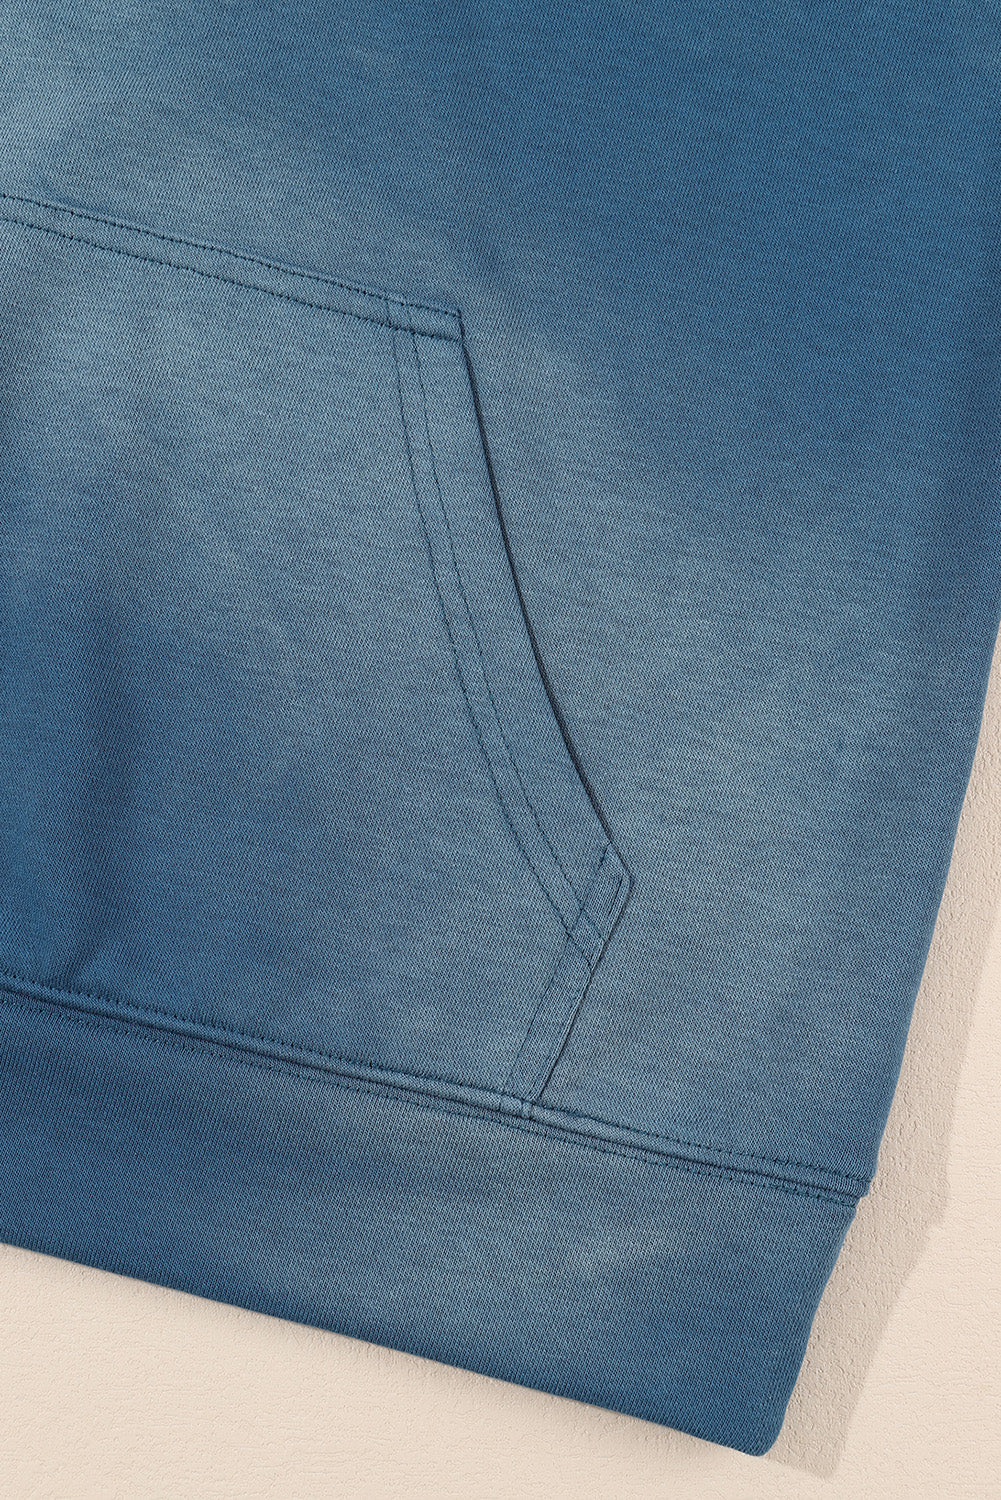 Plava jednobojna majica s kapuljačom s kapuljačom u obliku klokana